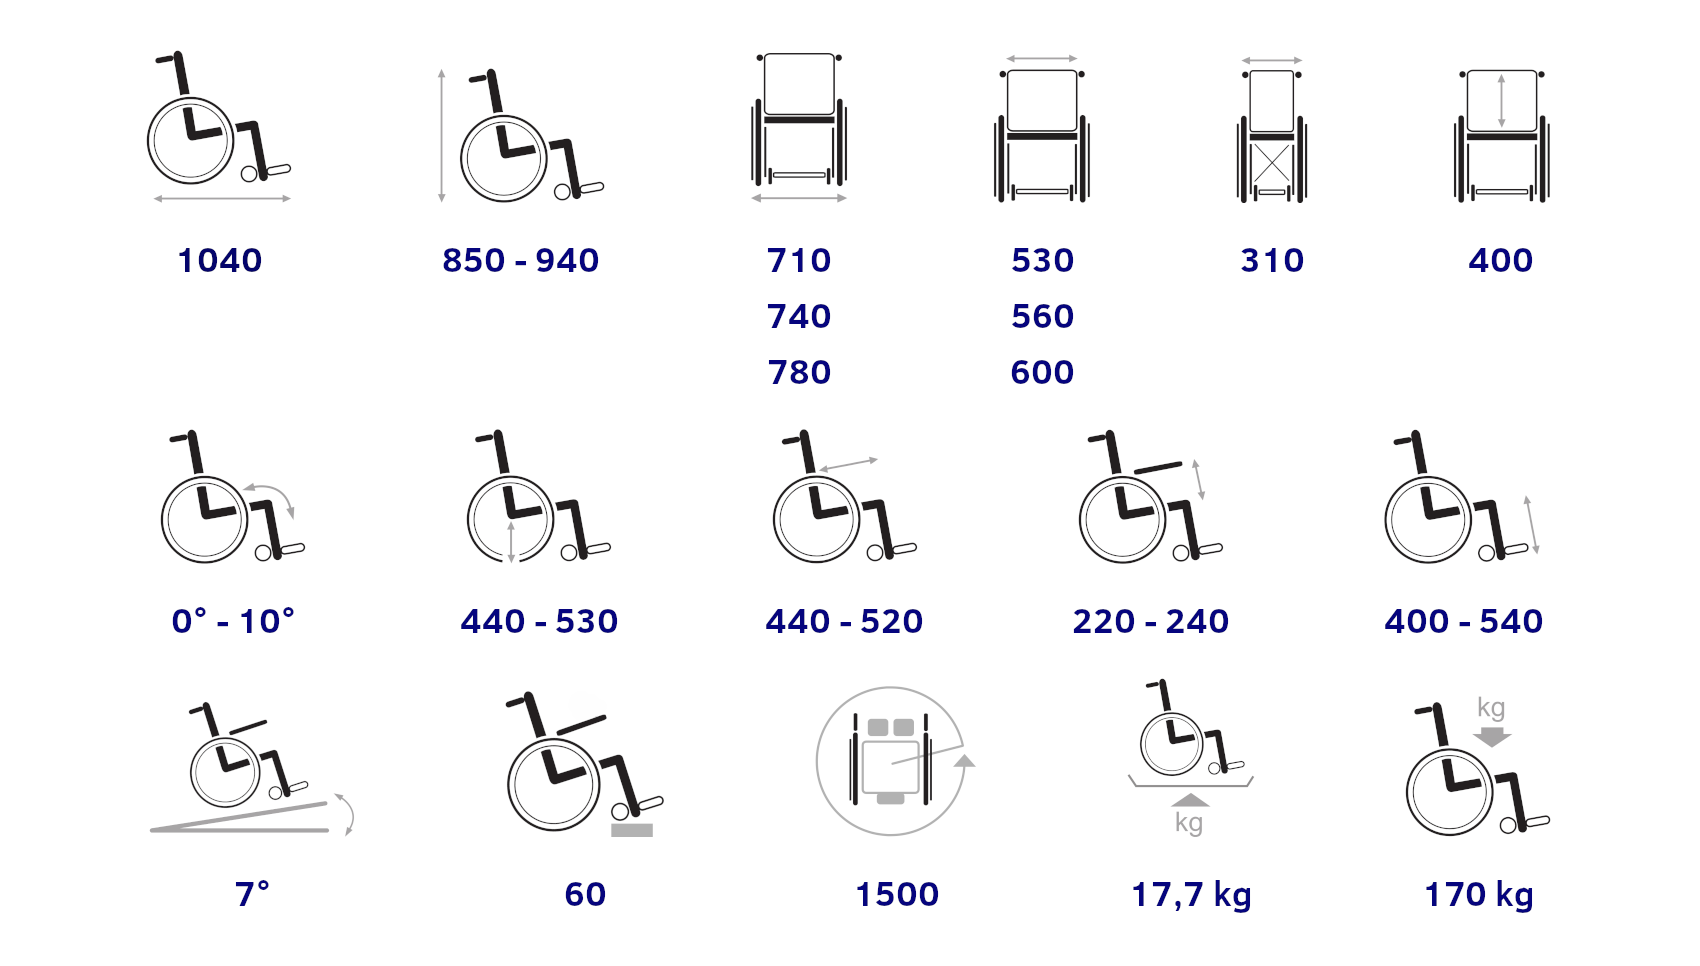 Wózek inwalidzki V300 Vermeiren. dane techniczne wózka. Masz problem z kupnem – zamów telefonicznie 735 575 252